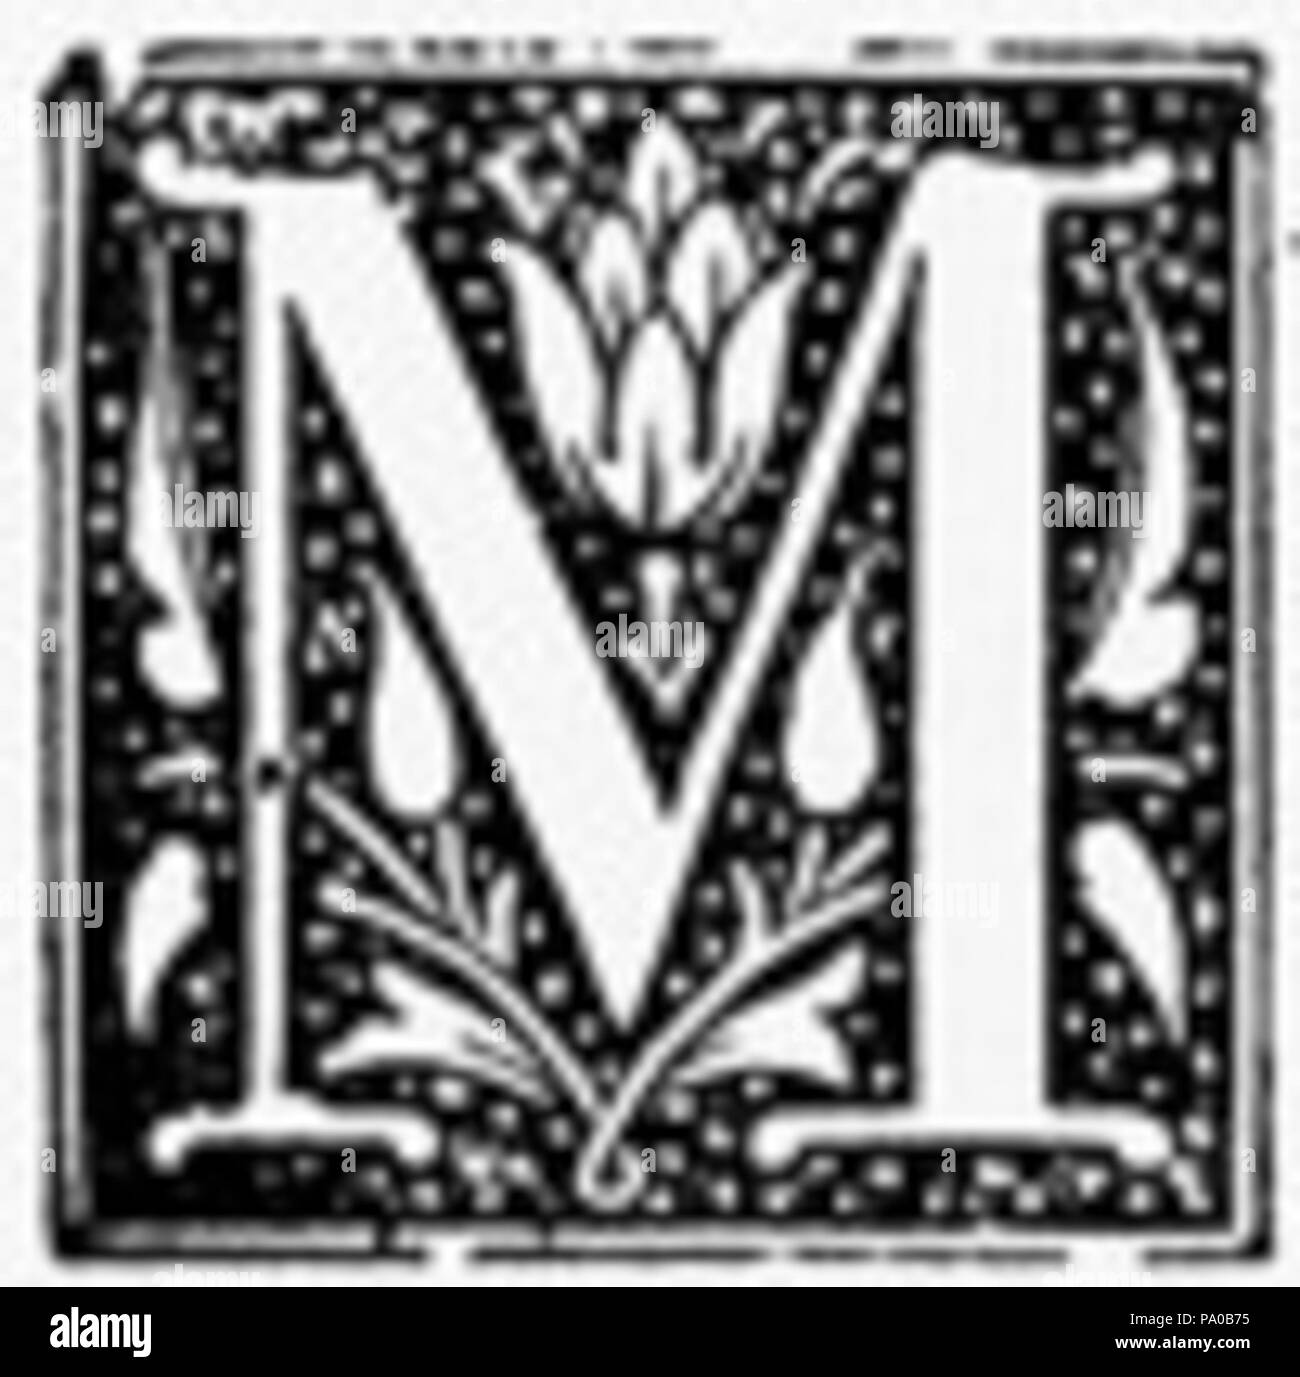 Alphabet M (Uppercase letter m), Letter M Hardcover Journal for